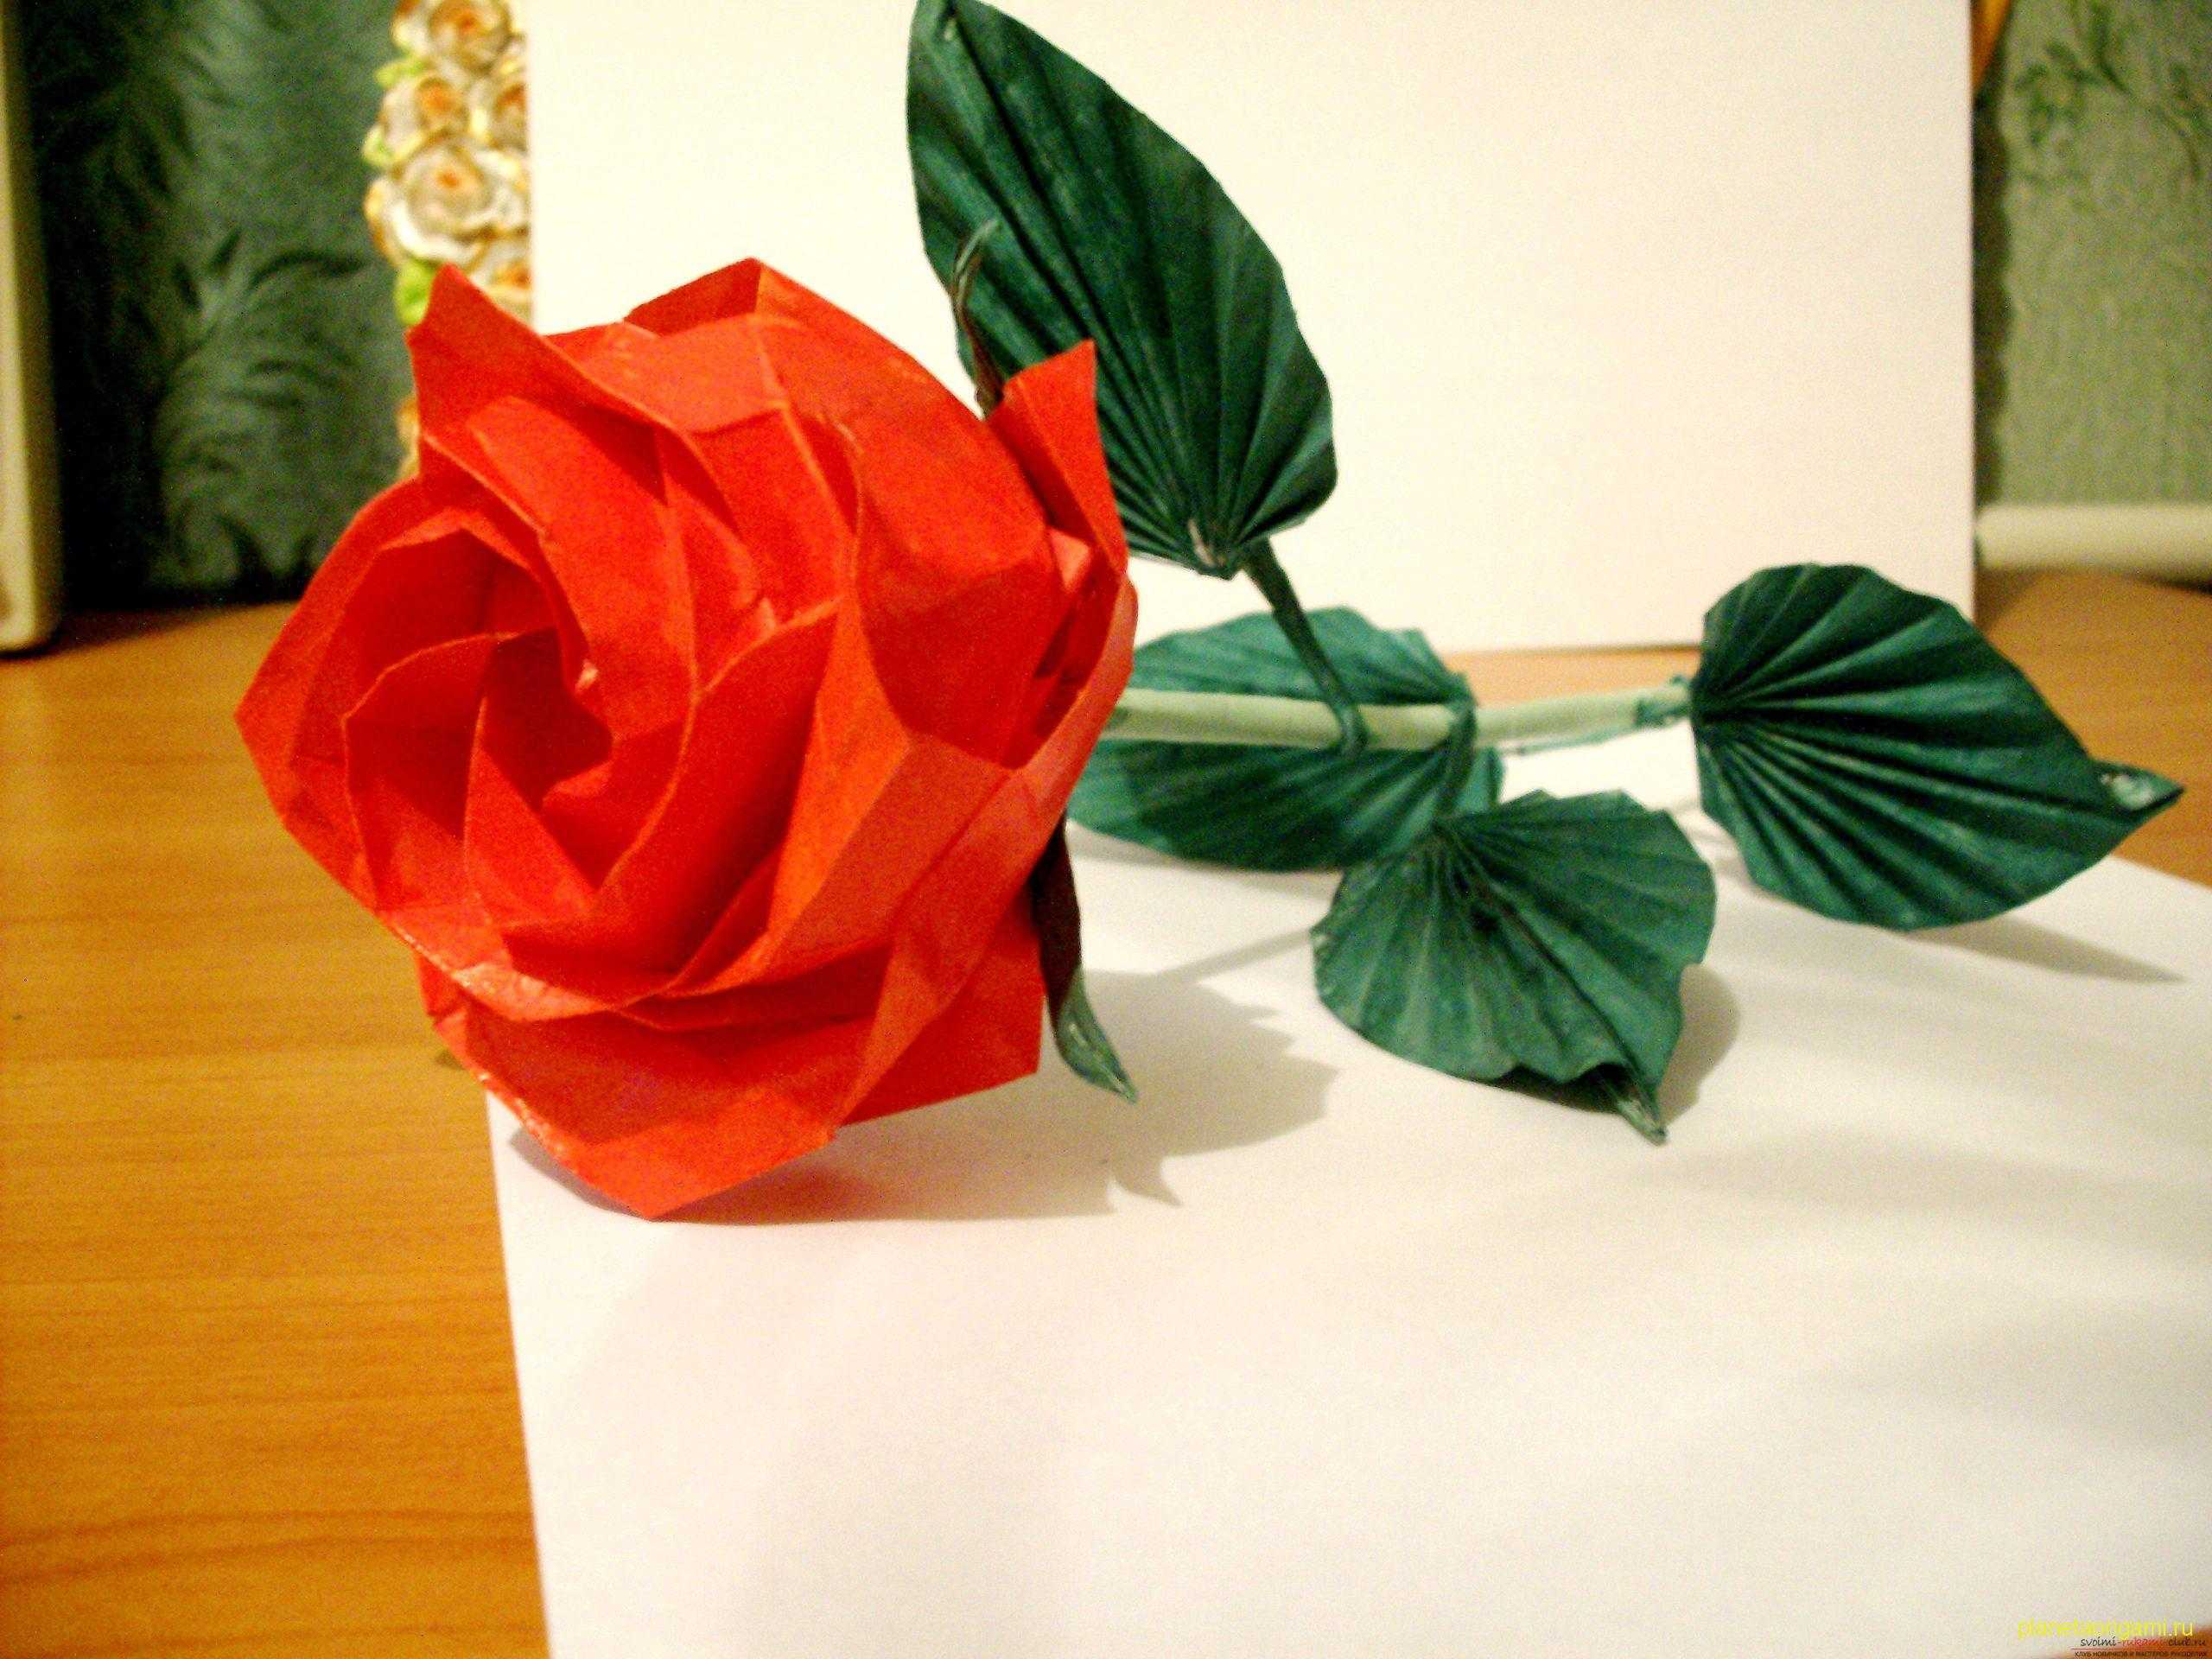 Пошаговая схема как сделать оригами цветок из бумаги